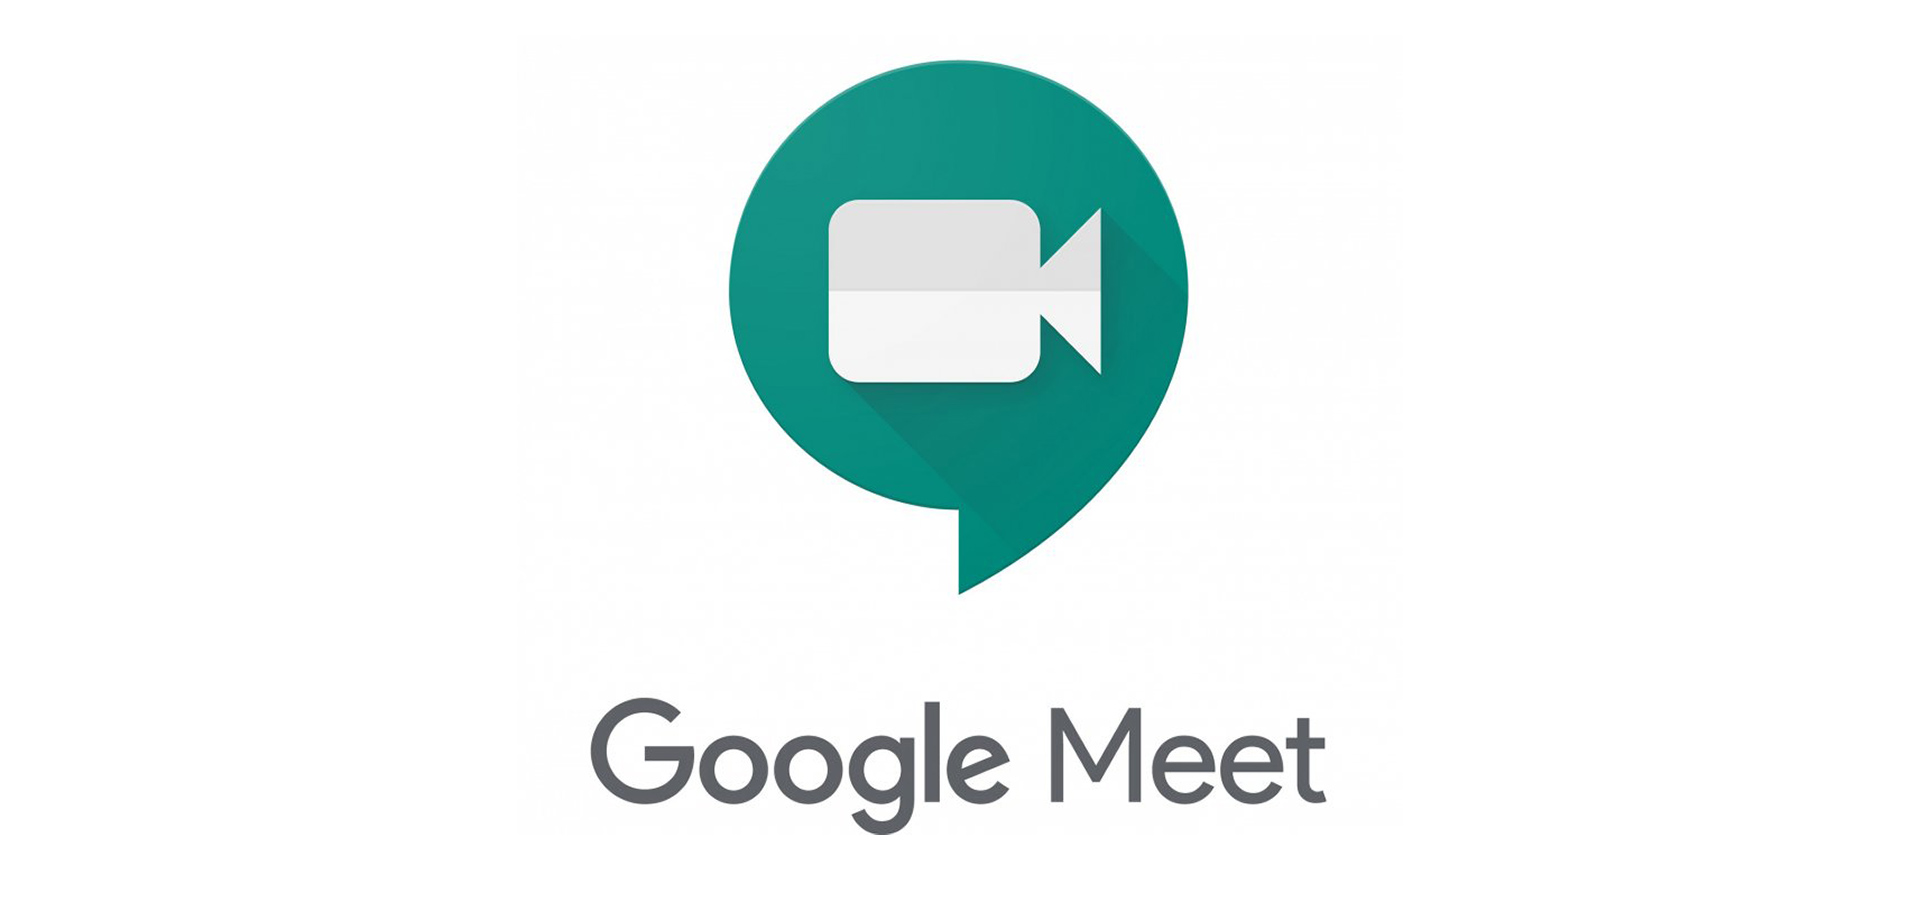 طرح خلفيات الافتراضية لـGoogle Meet لمستخدمى الهواتف الذكية .. التفاصيل الكاملة Image